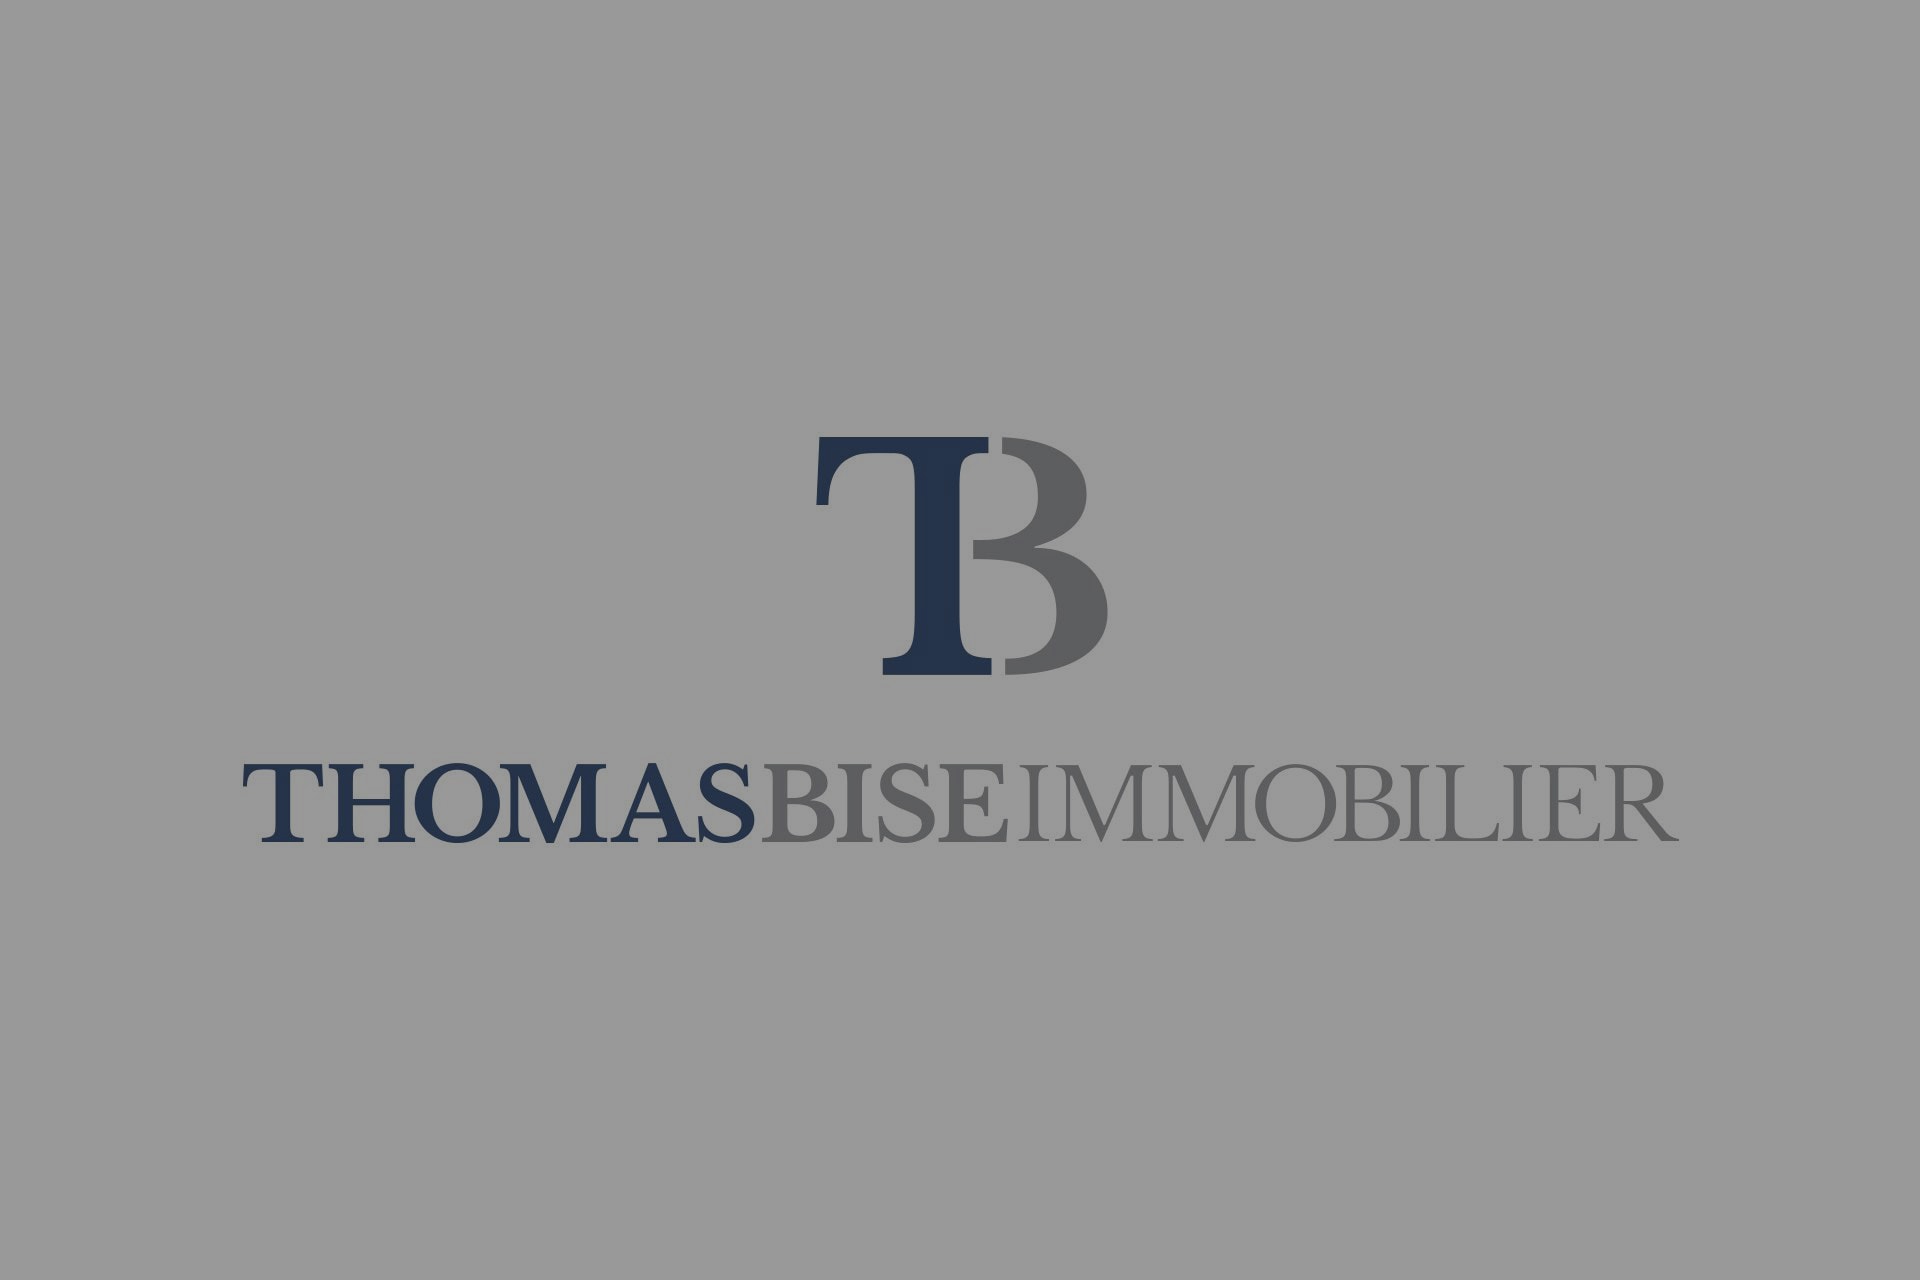 Logo Thomas Bise